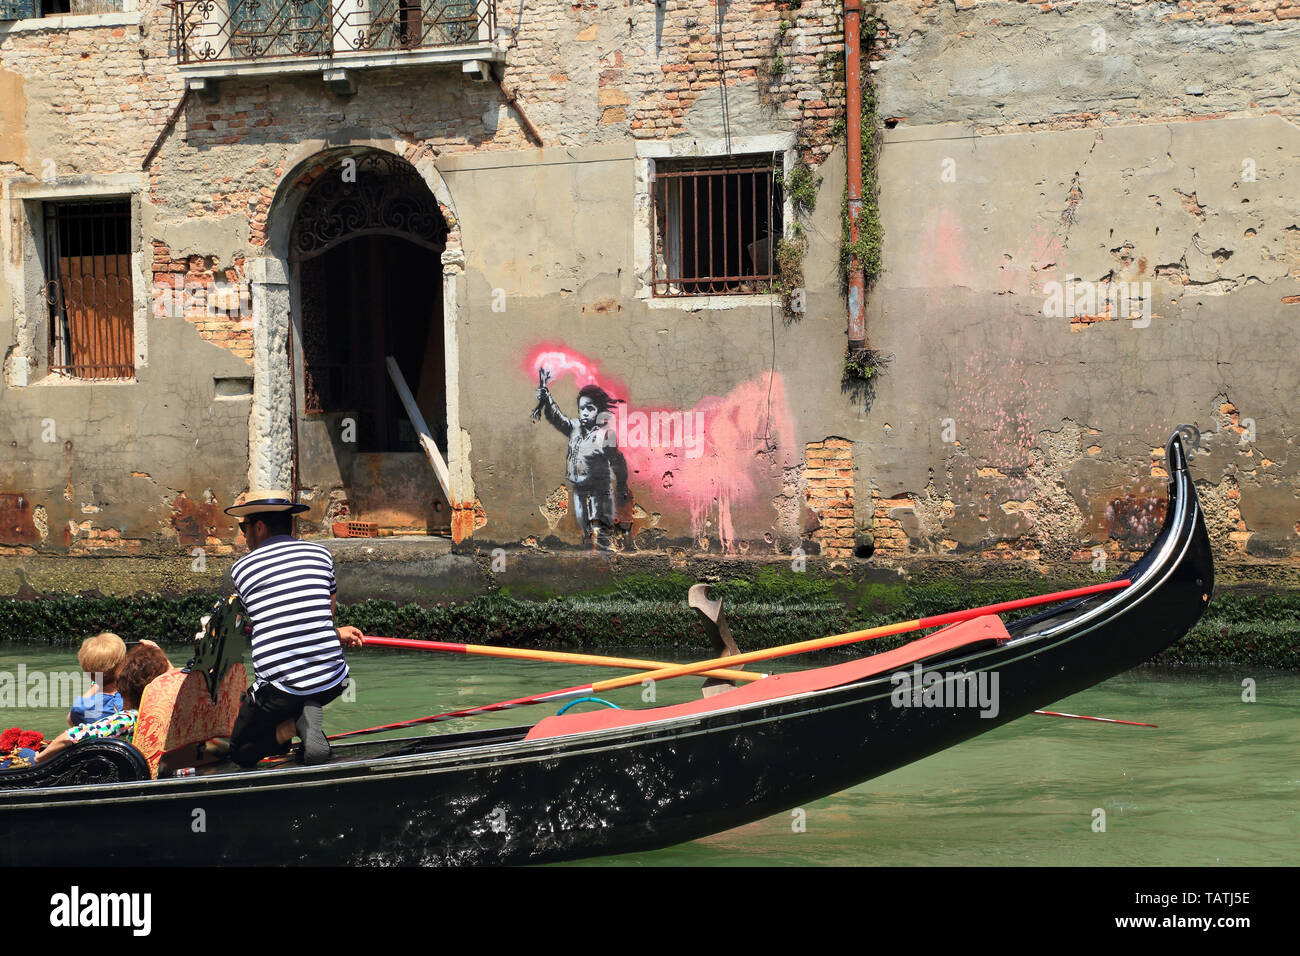 El niño migrante naufragado graffiti por Banksy, Venecia 2019 Foto de stock